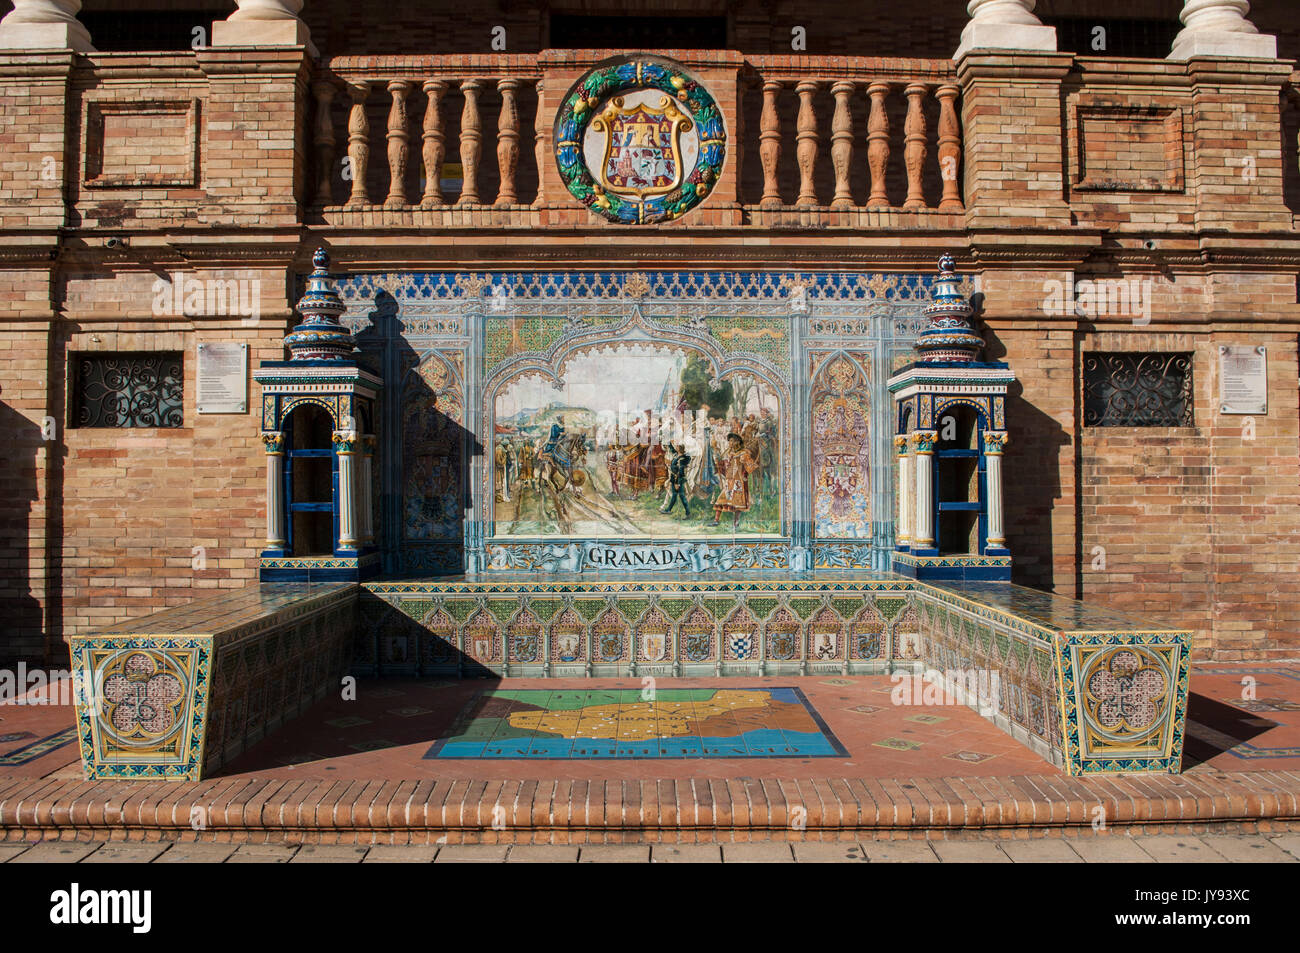 Ornements en céramique dédié dans la Plaza de Espana, la place la plus célèbre de Séville, à l'Espagnol 48 capitales provinciales avec des cartes, des mosaïques, des armoiries Banque D'Images